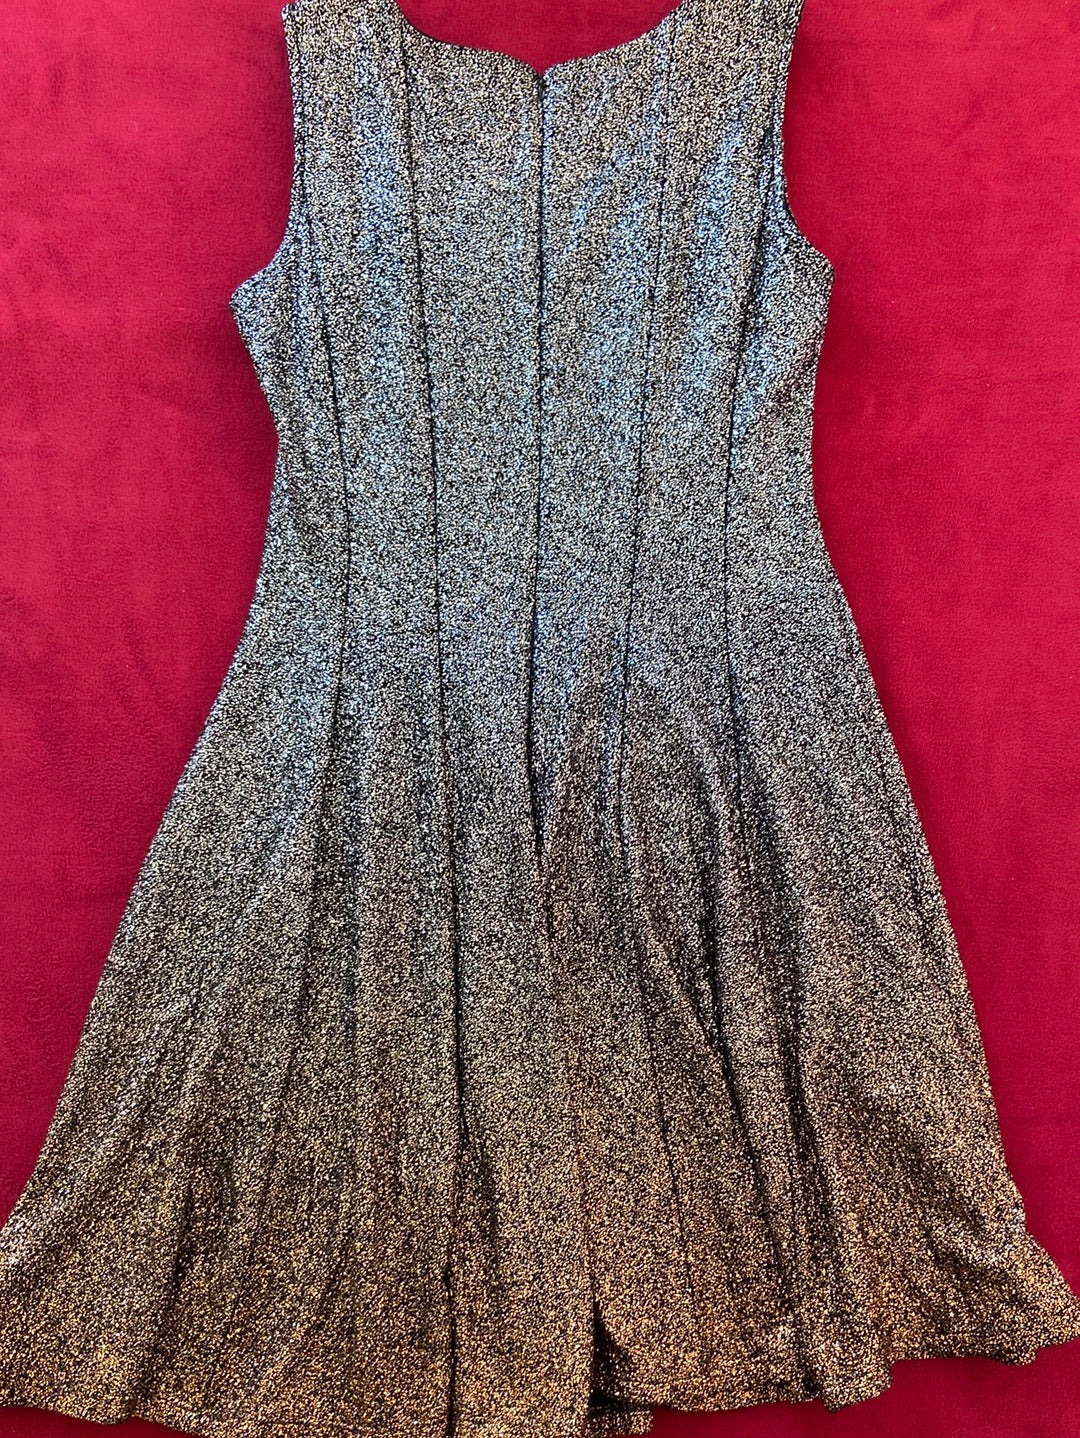 OMBRÉ SHIMMER MSK Silver Dress Size 12